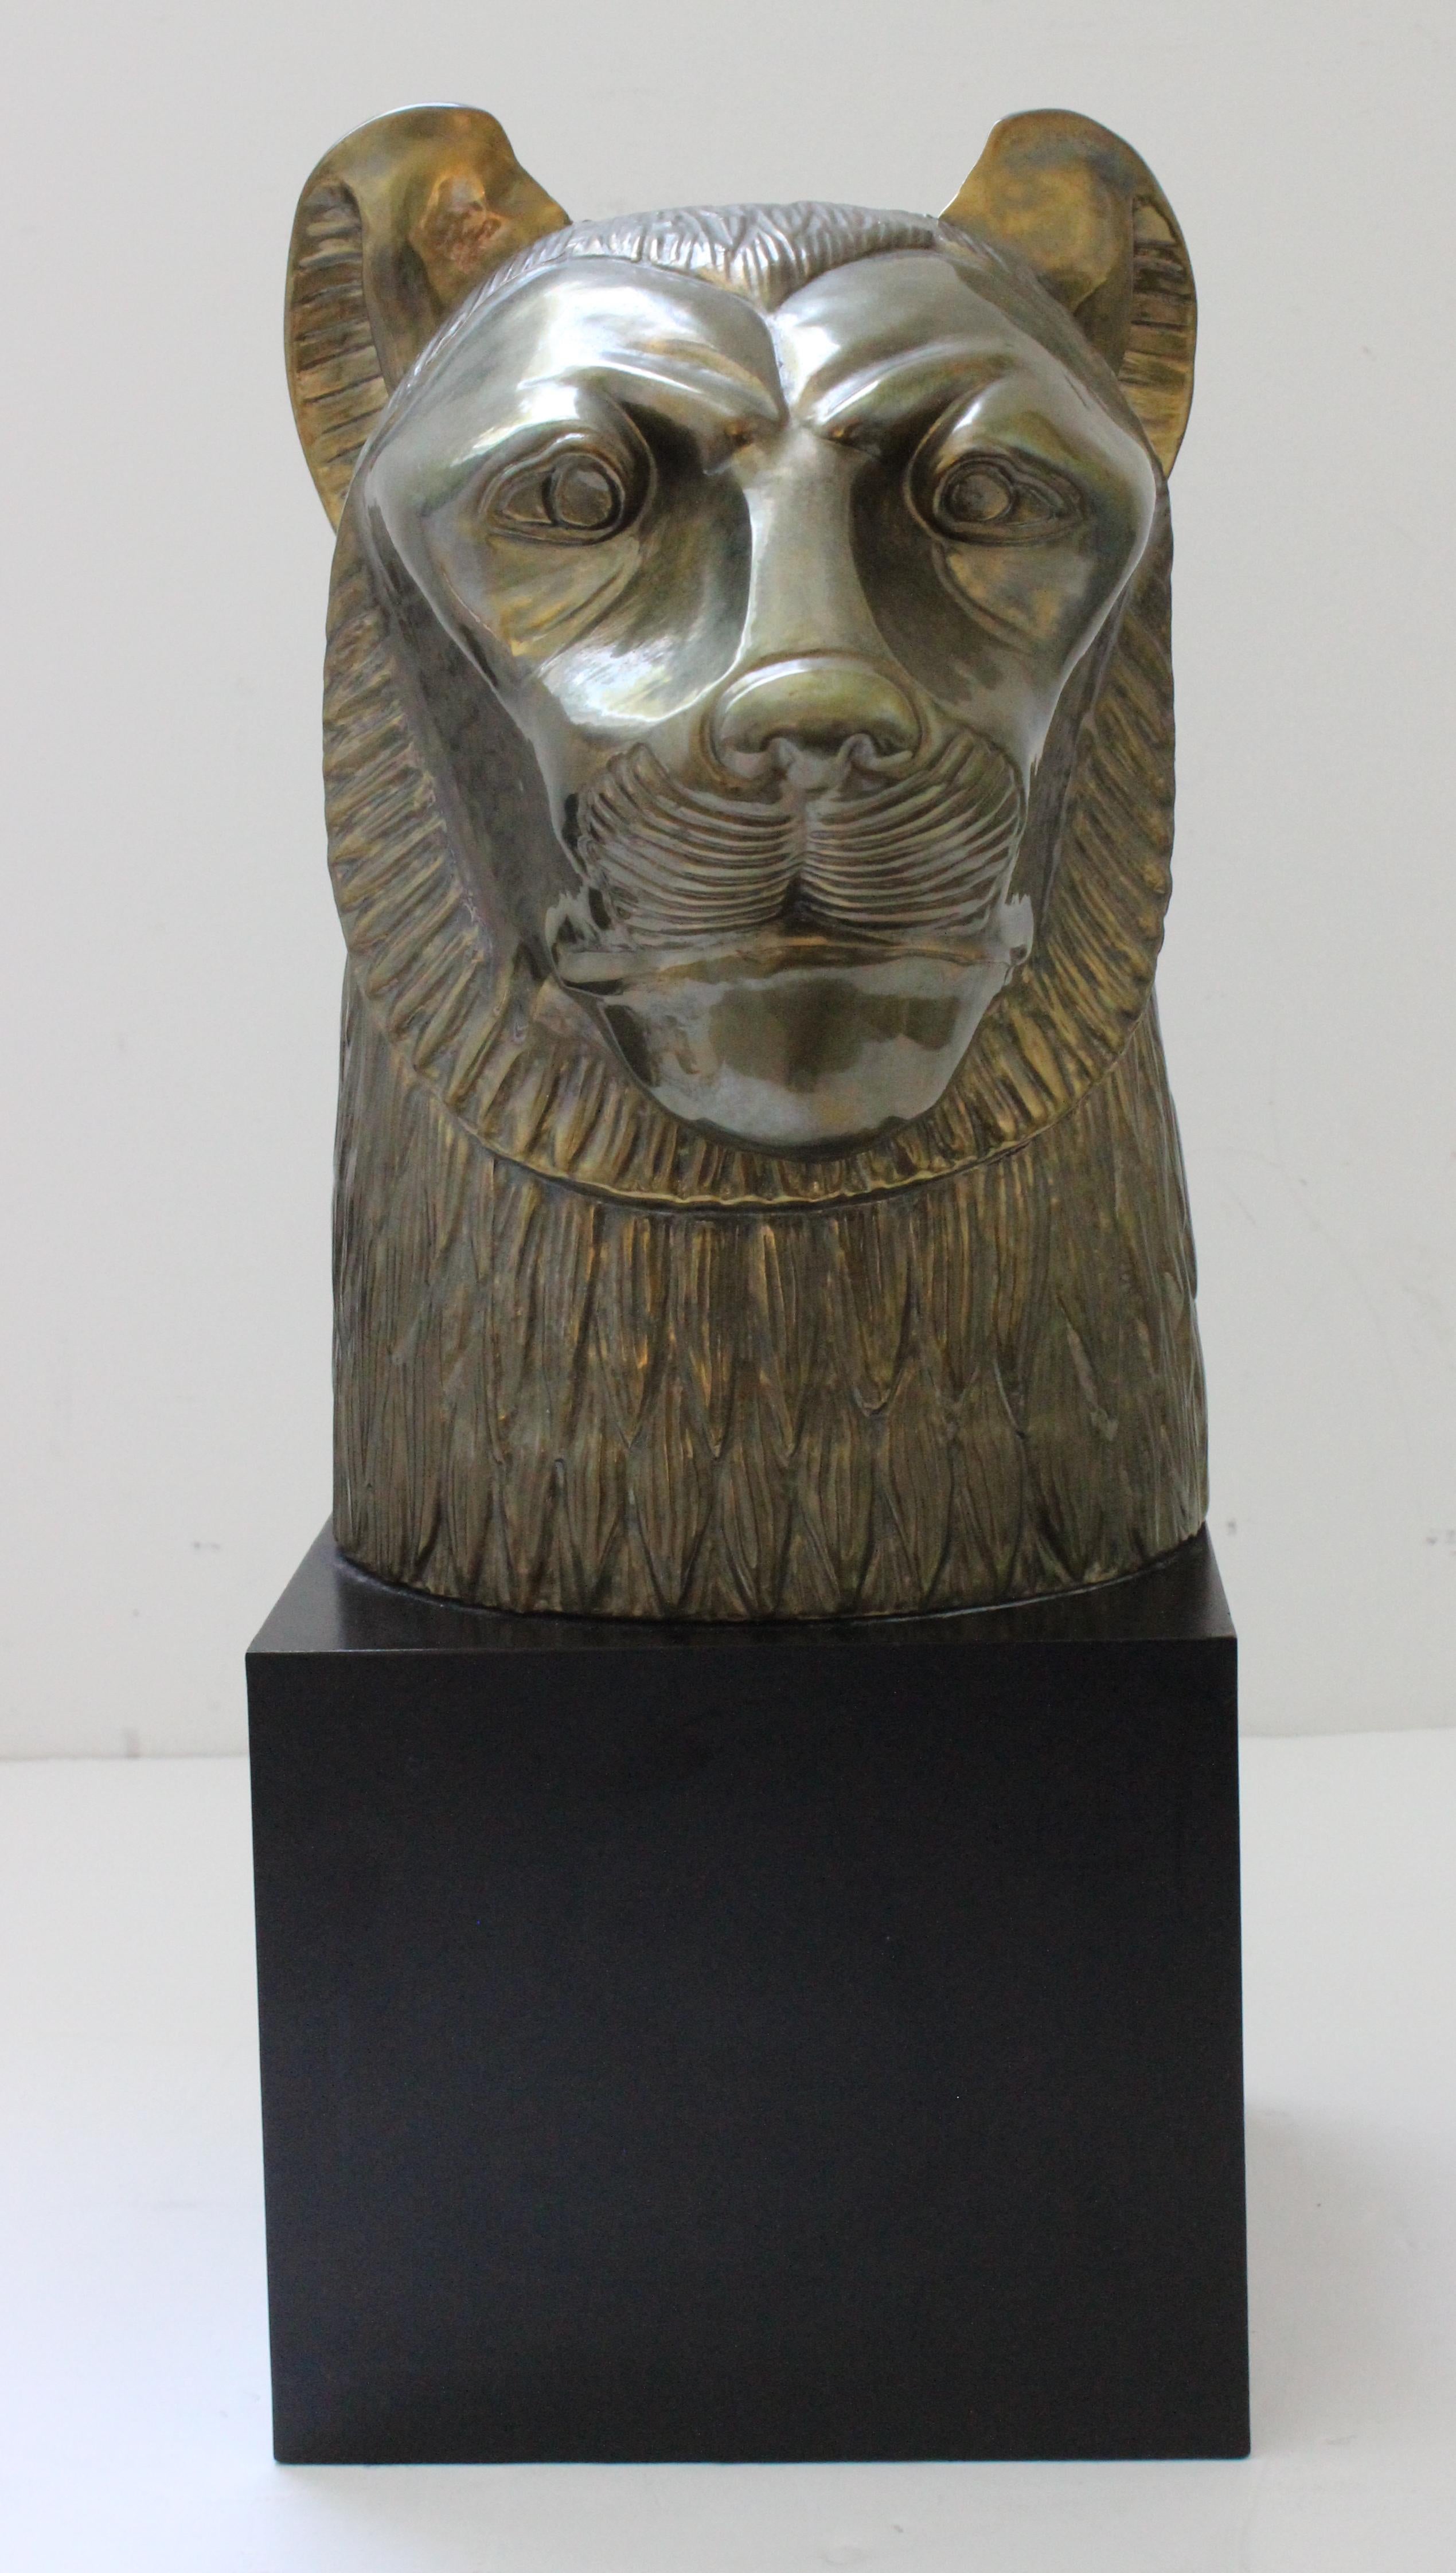 Diese stilvolle und schicke Figur der ägyptischen Göttin Sekhmet stammt aus den späten 1970er Jahren und wurde von Chapman als Teil einer Kollektion zum Gedenken an die weltweite Ausstellung von Tutanchamun geschaffen. 

Hinweis: Das Möbelstück